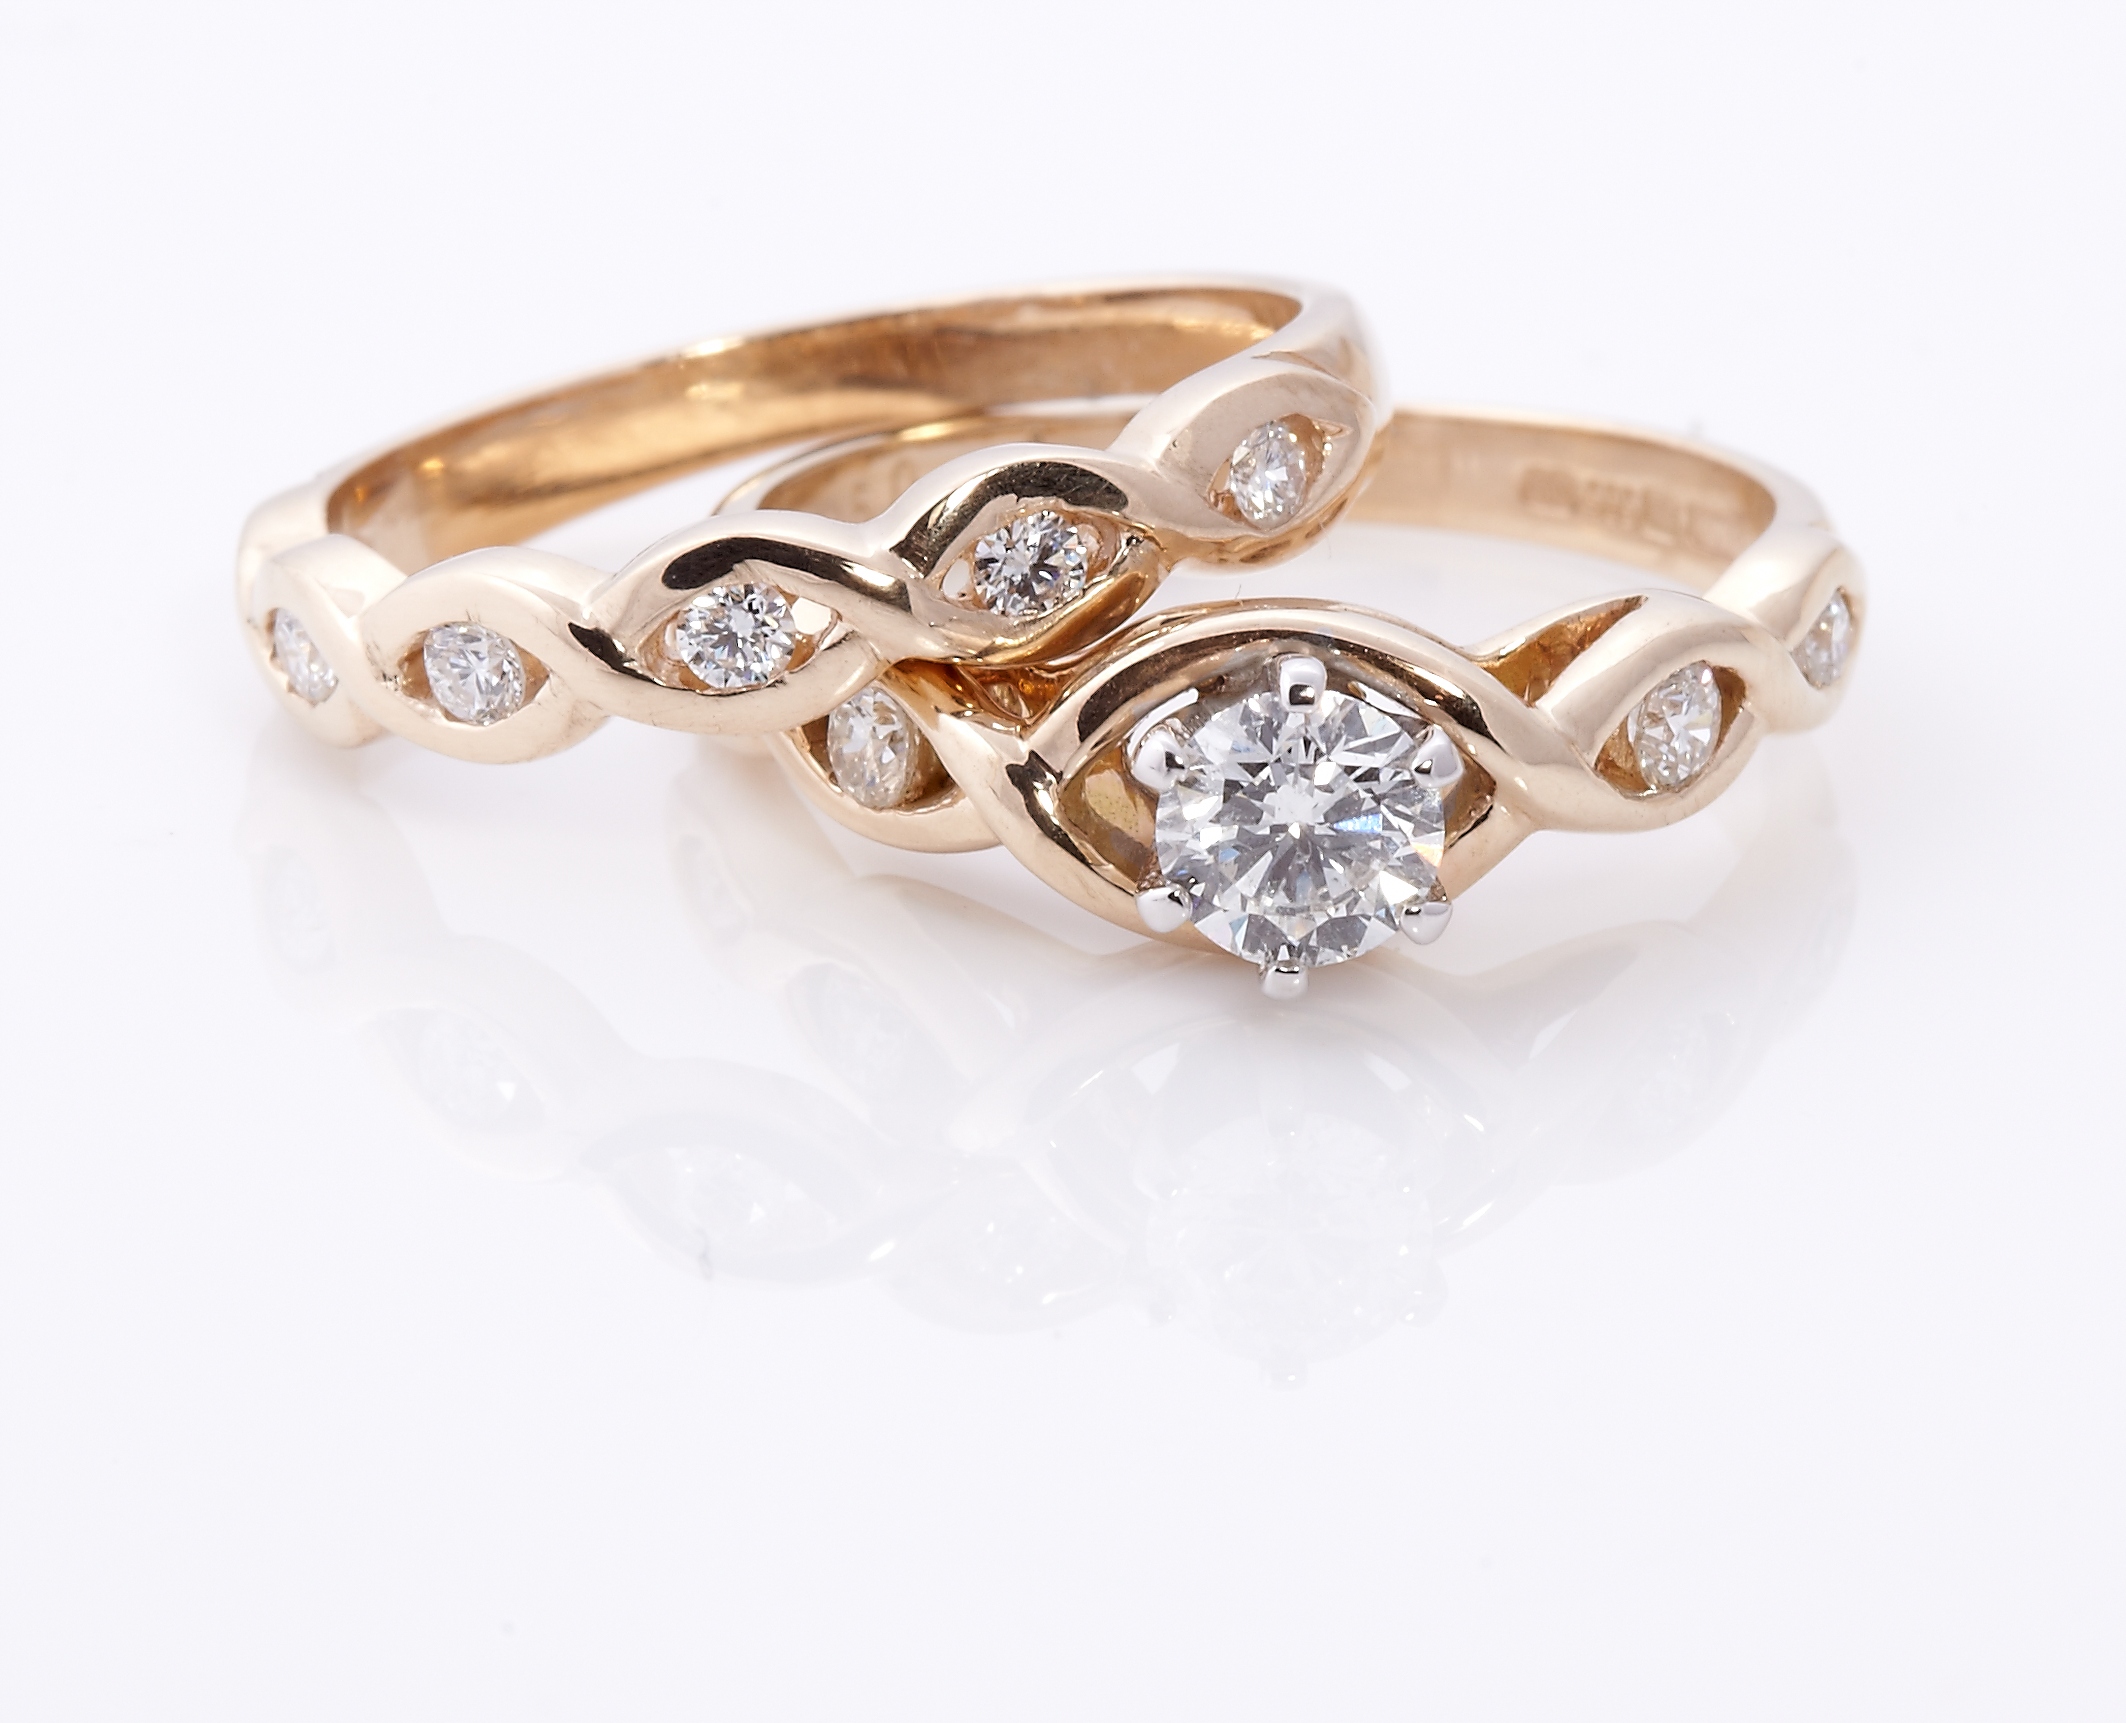 ... Ring, Celtic Wedding Ring, Irish Engagement Ring, Irish Wedding Ring